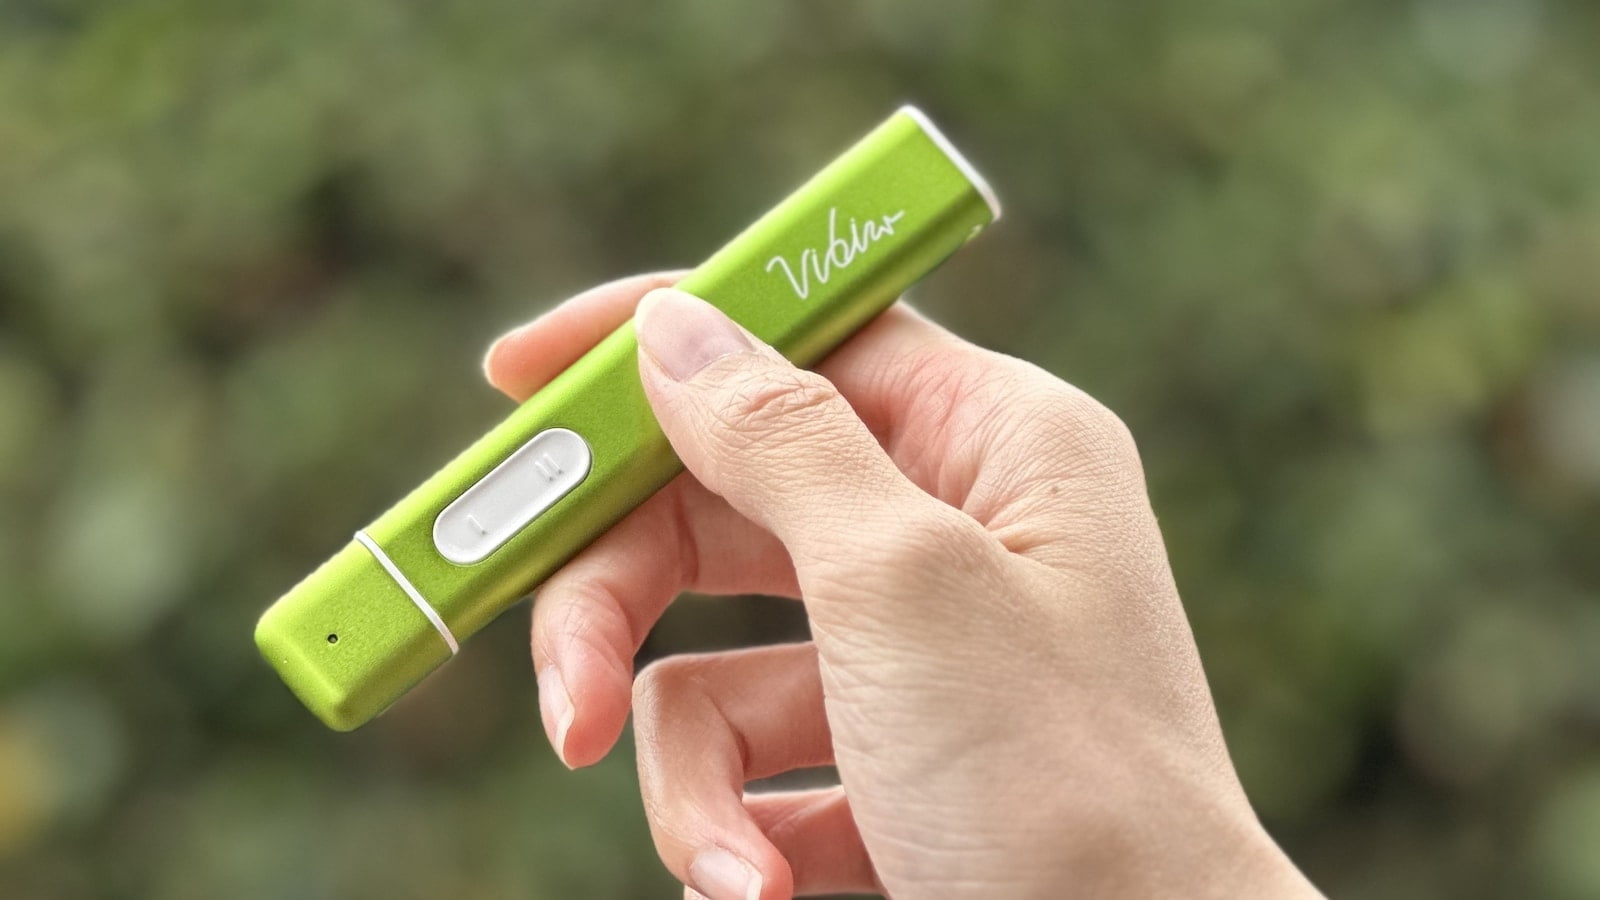 VIBIS Dispositivo para aliviar picaduras de insectos y picazón 01